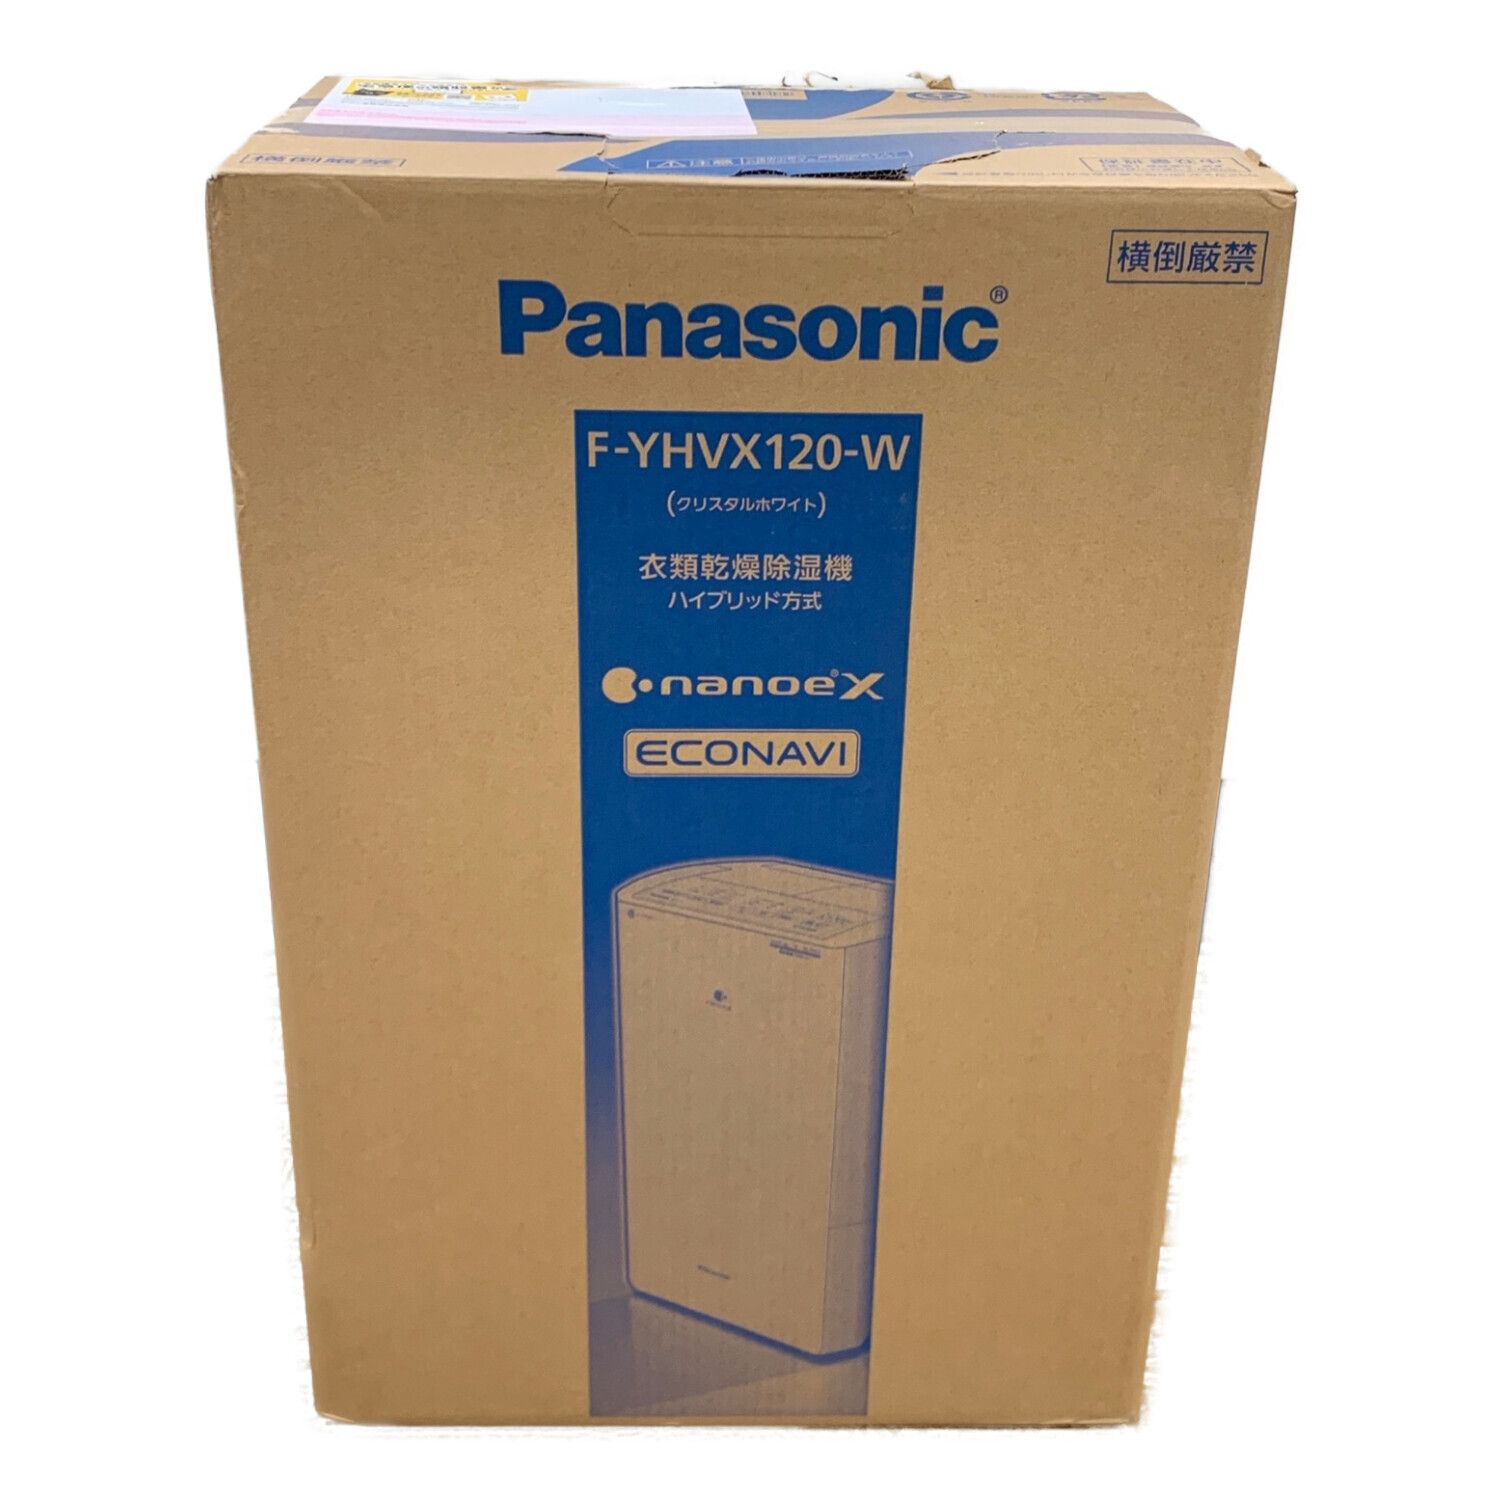 22,325円新品・未開封Panasonic 衣類乾燥除湿機F-YHVX120-W WHITE